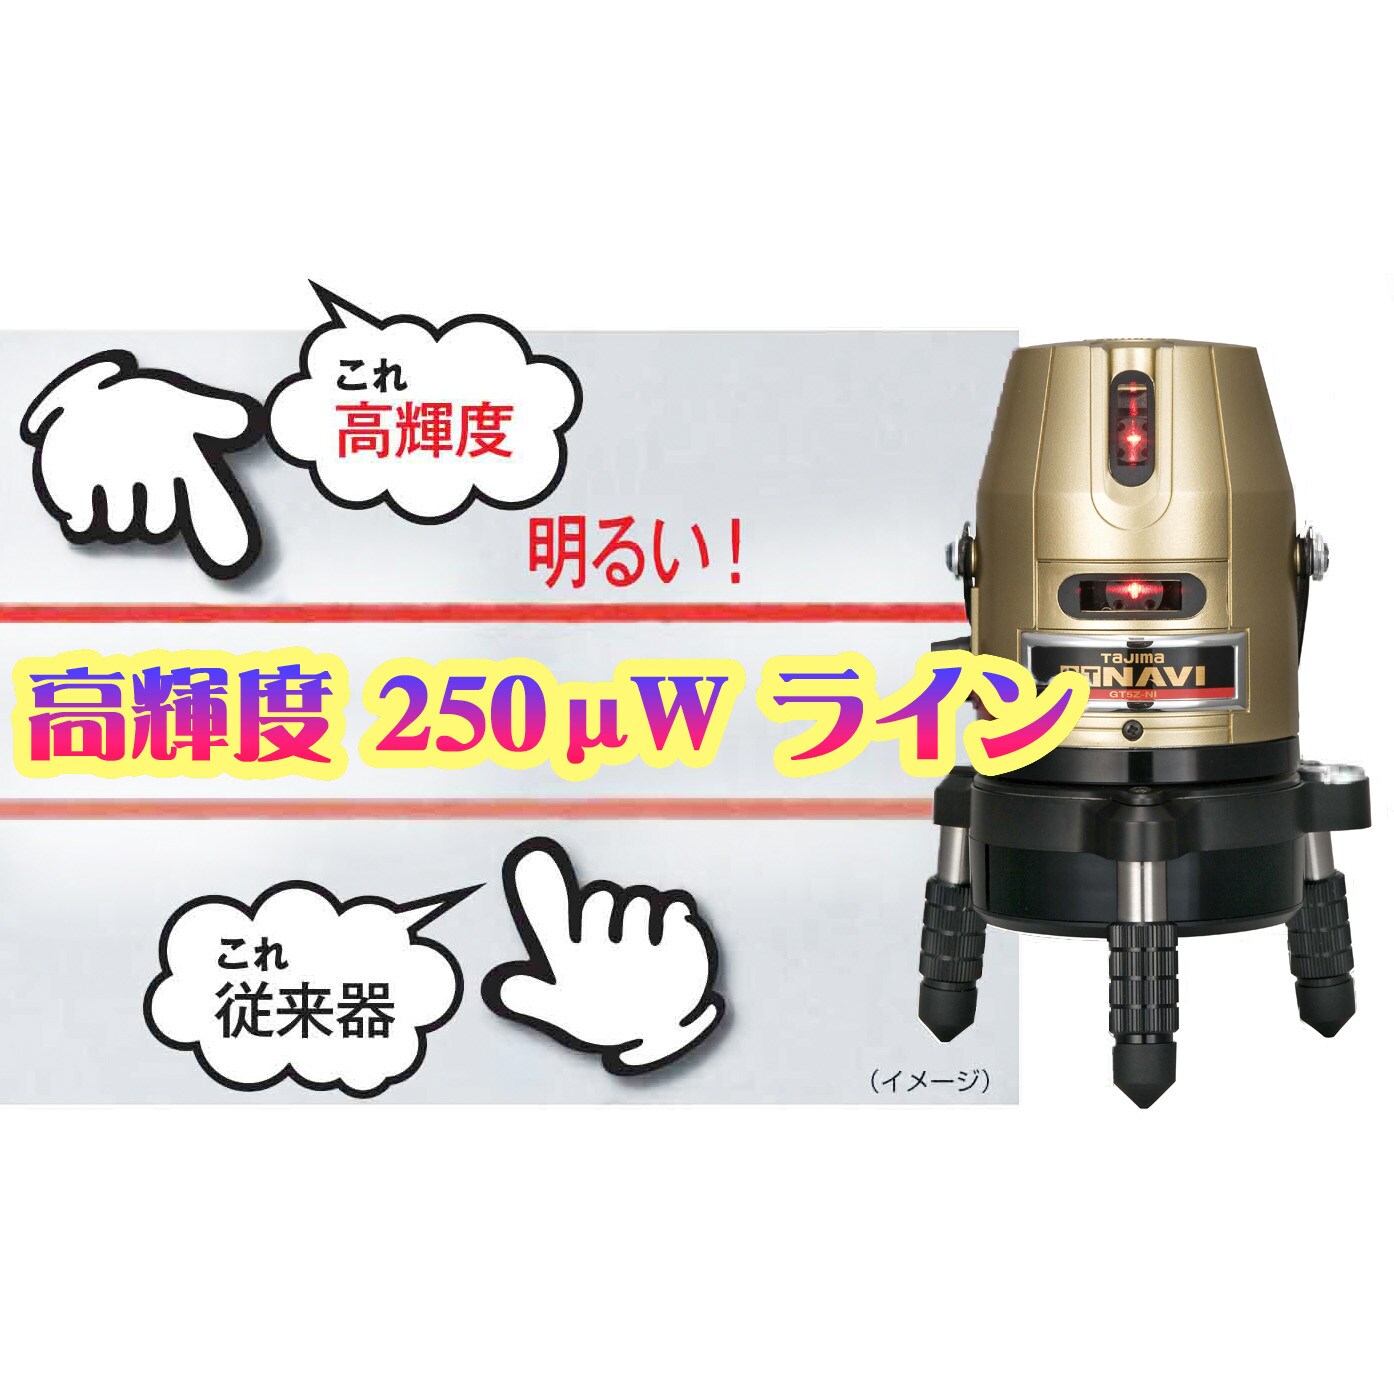 売れ筋商品 タジマ1 レーザー墨出し器 GT5Zi 5ライン 工具 